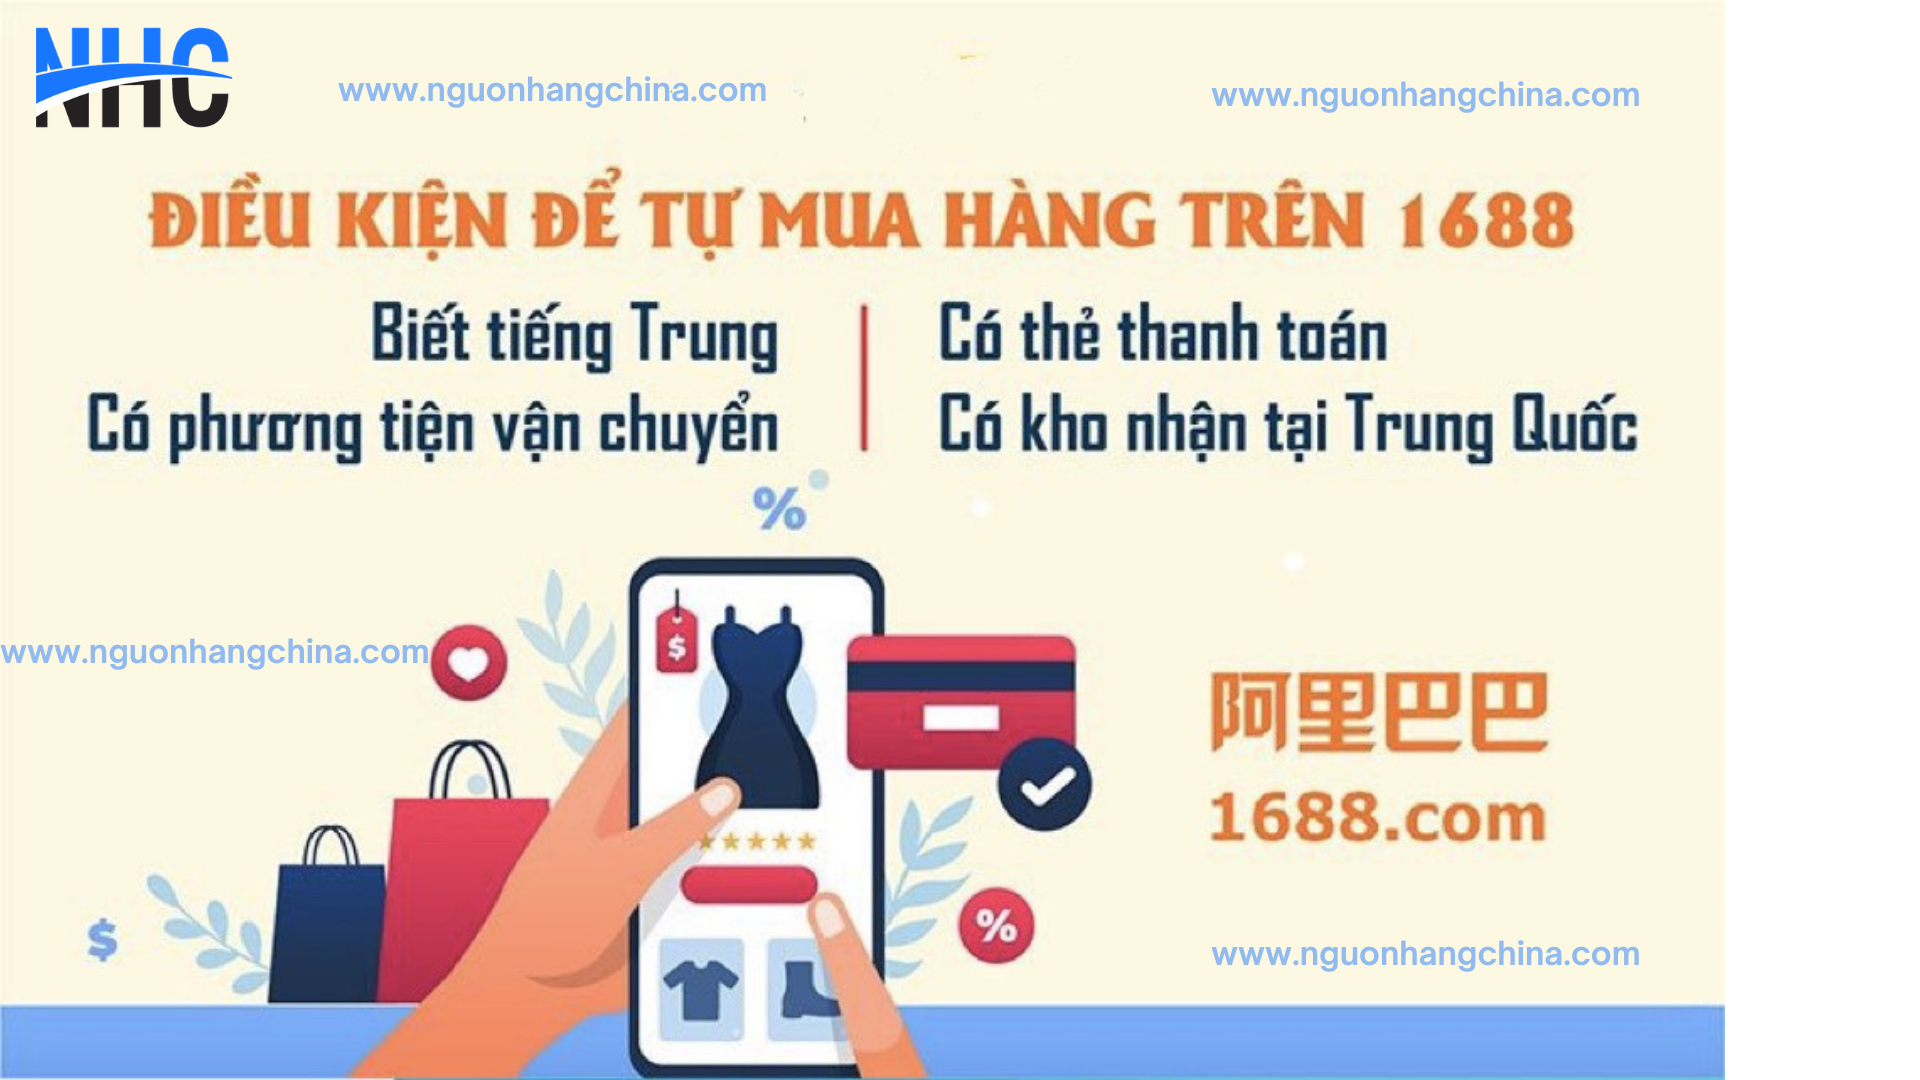 www.nguonhangchina.com 5